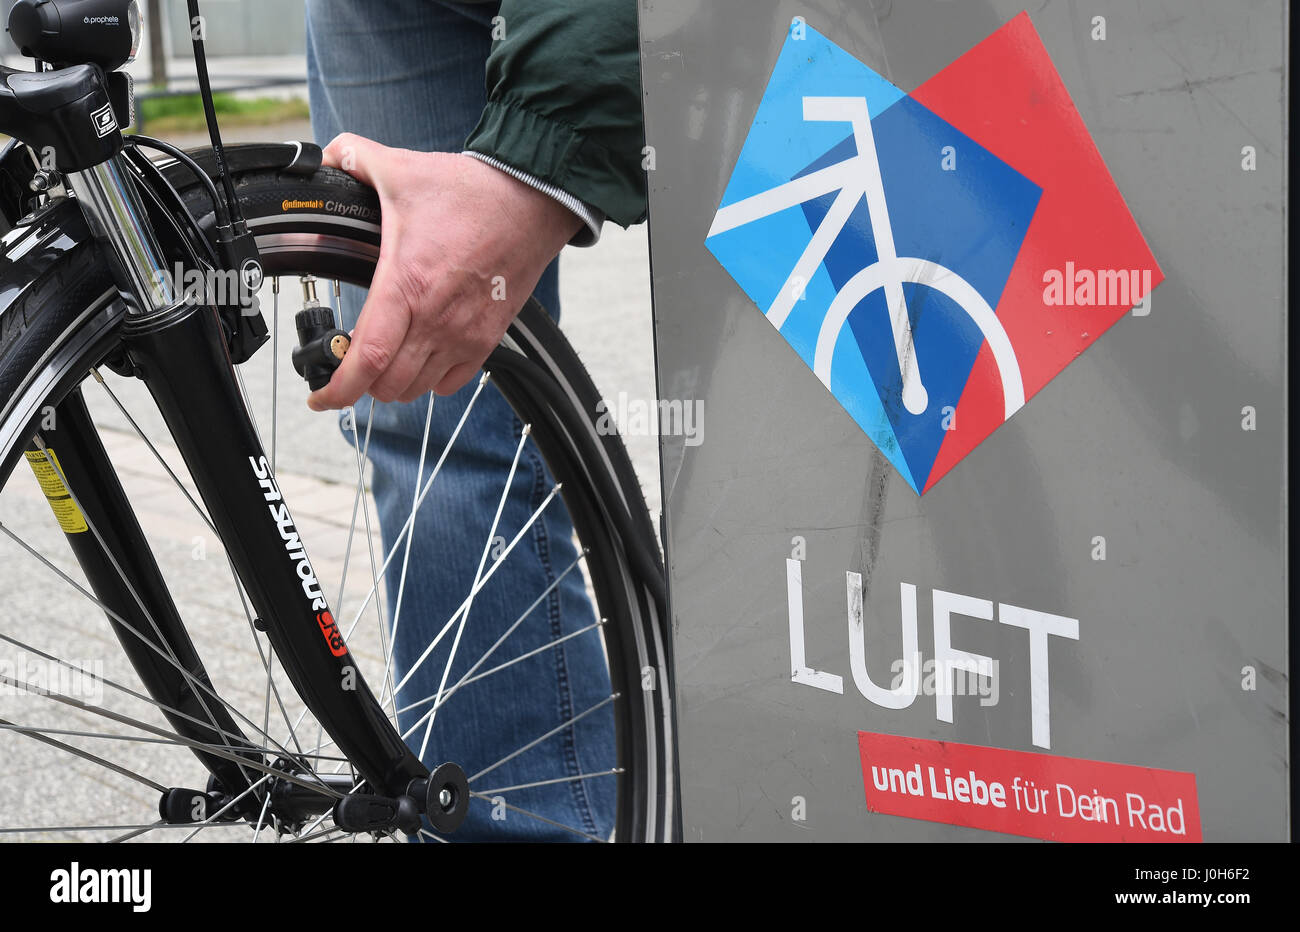 Ein Fahrrad Pumpe "Station" an dem Radfahrer ihre Reifen kostenlos in  Hannover, 12. April 2017 Aufpumpen können. Foto: Holger Hollemann/dpa  Stockfotografie - Alamy